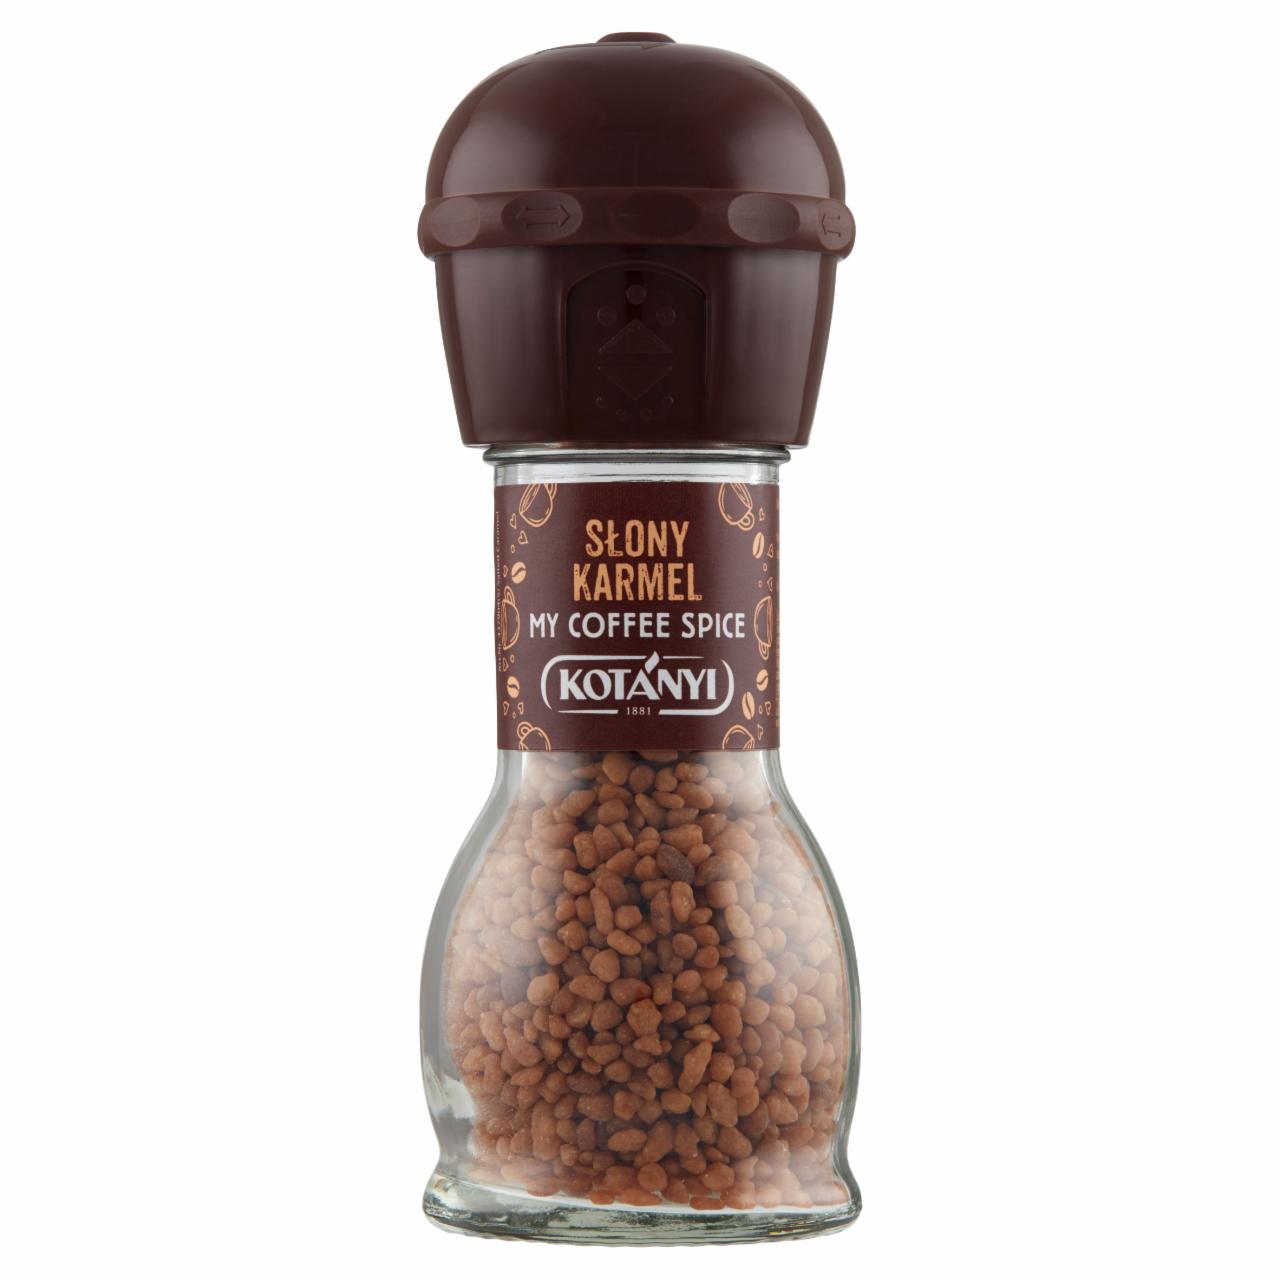 Zdjęcia - Kotányi My Coffee Spice Gruboziarnisty cukier karmelowy słony karmel 65 g